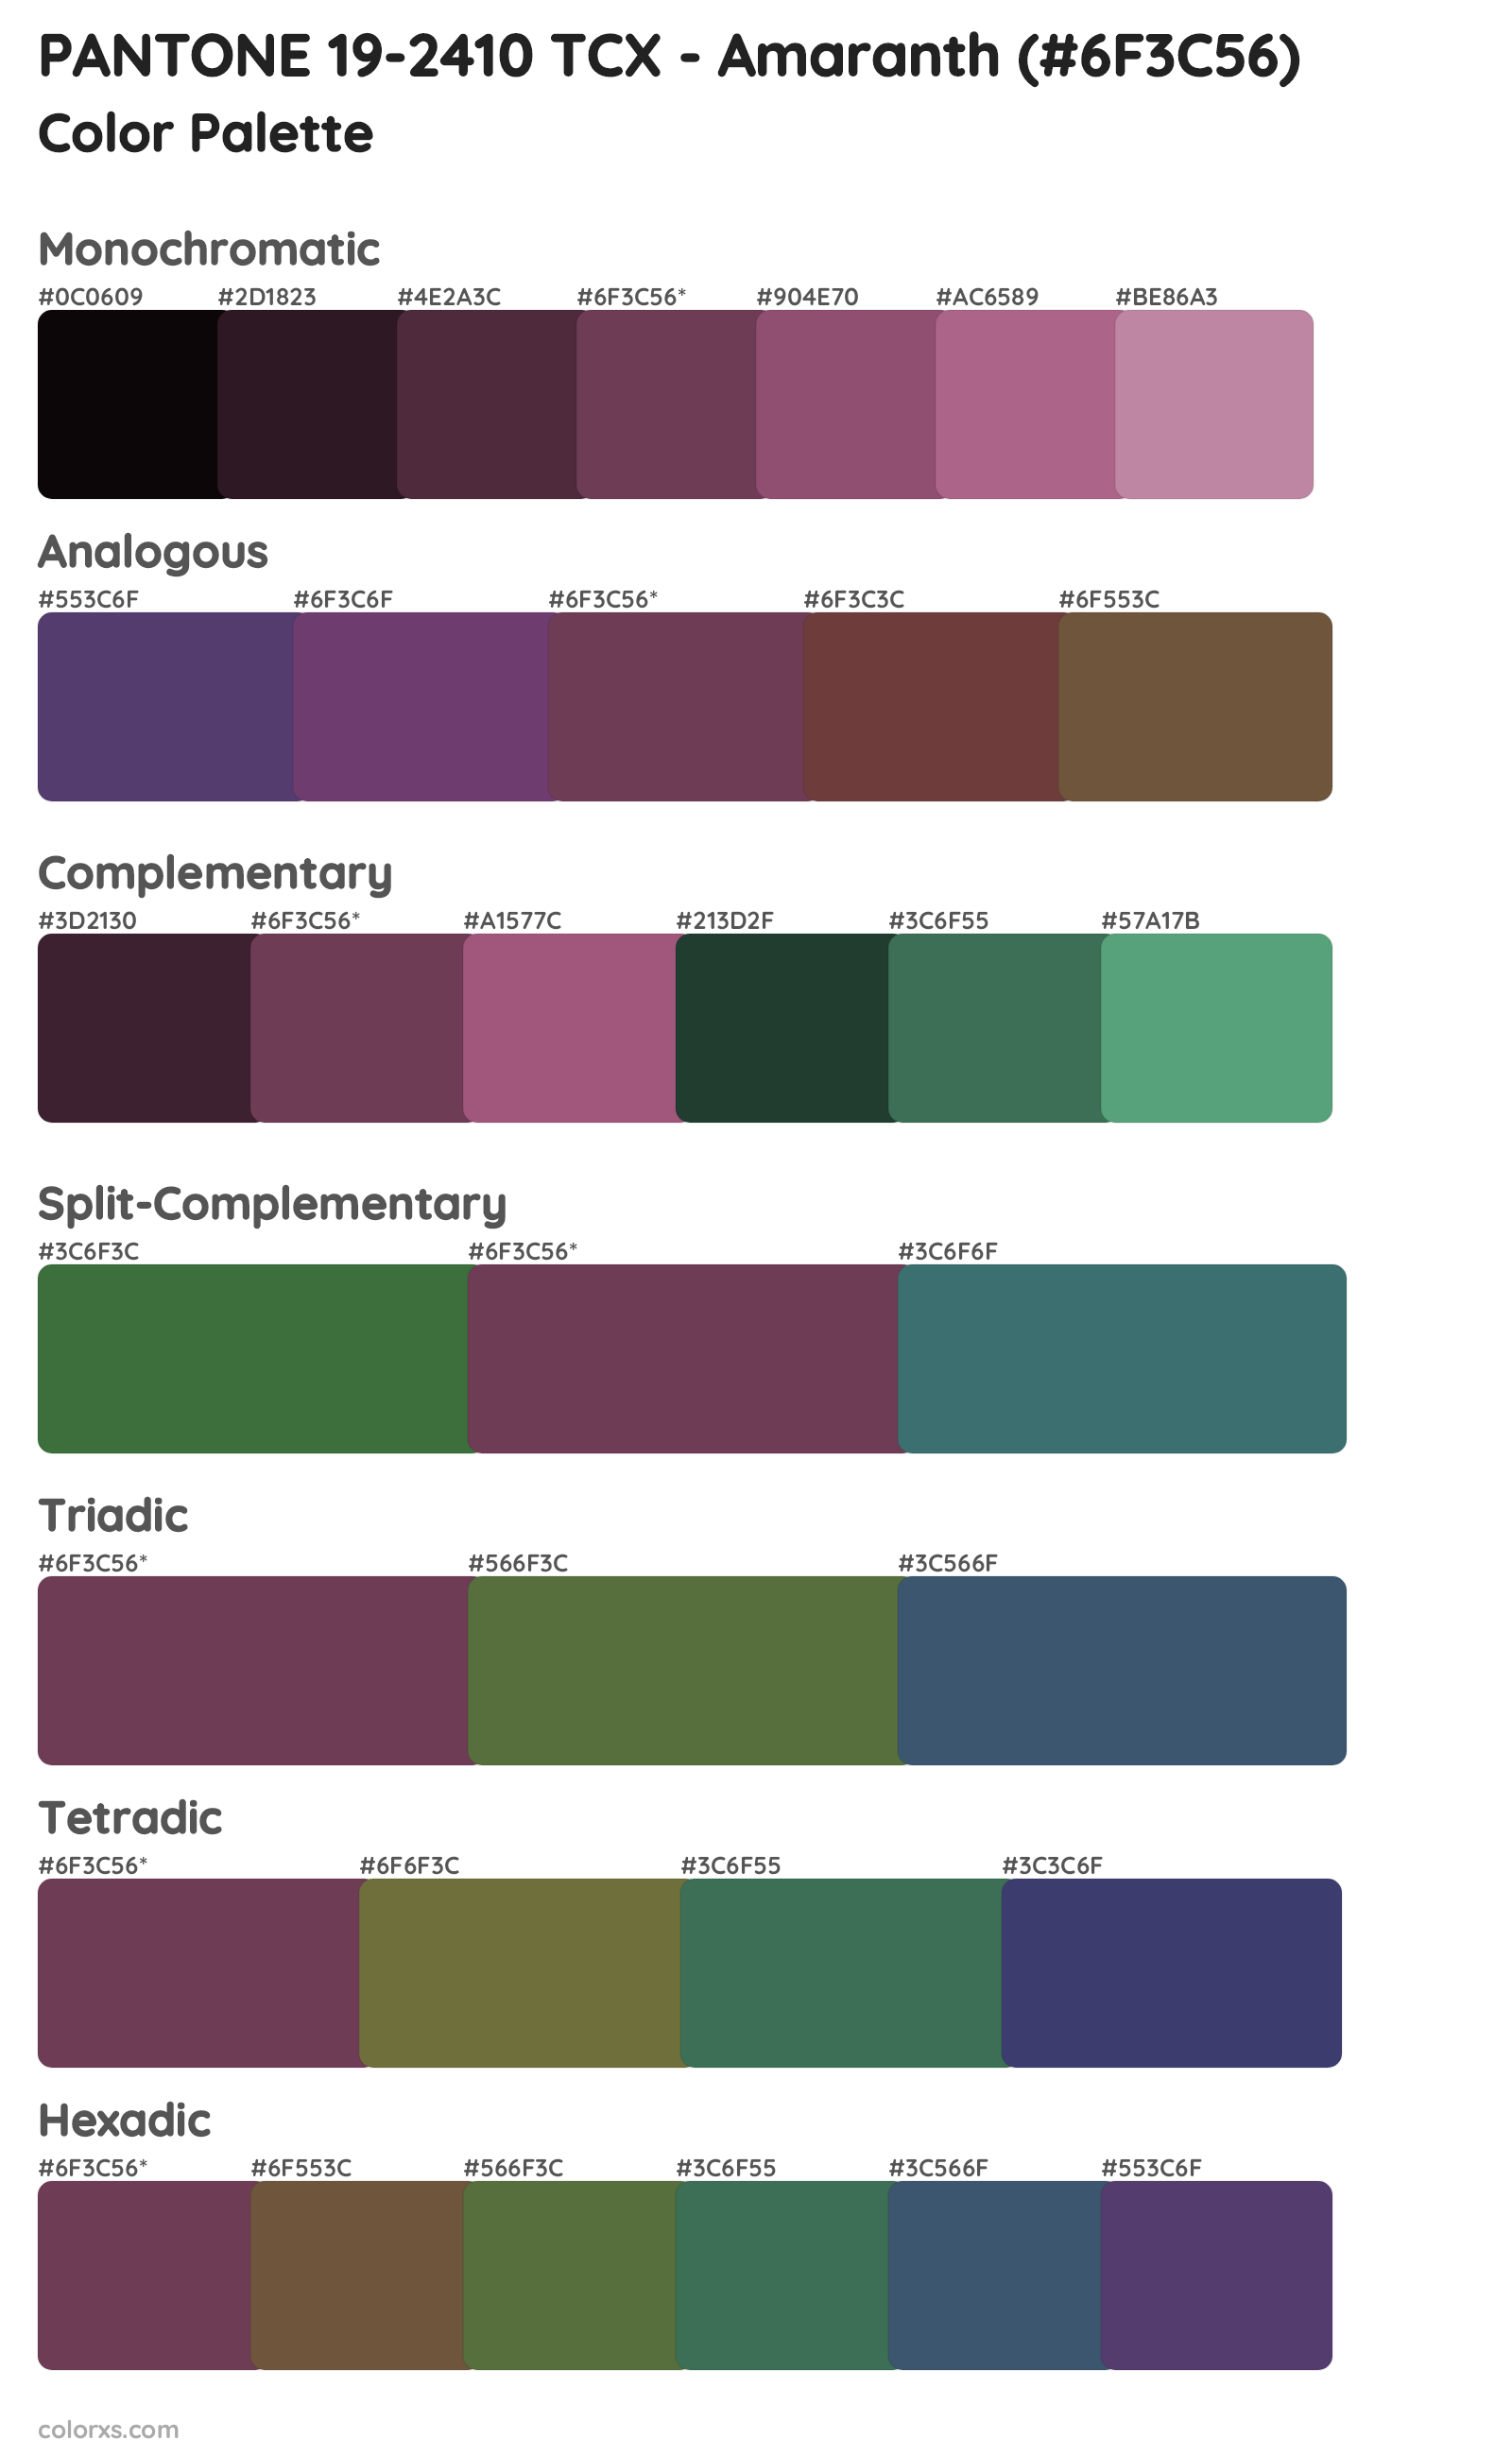 PANTONE 19-2410 TCX - Amaranth Color Scheme Palettes